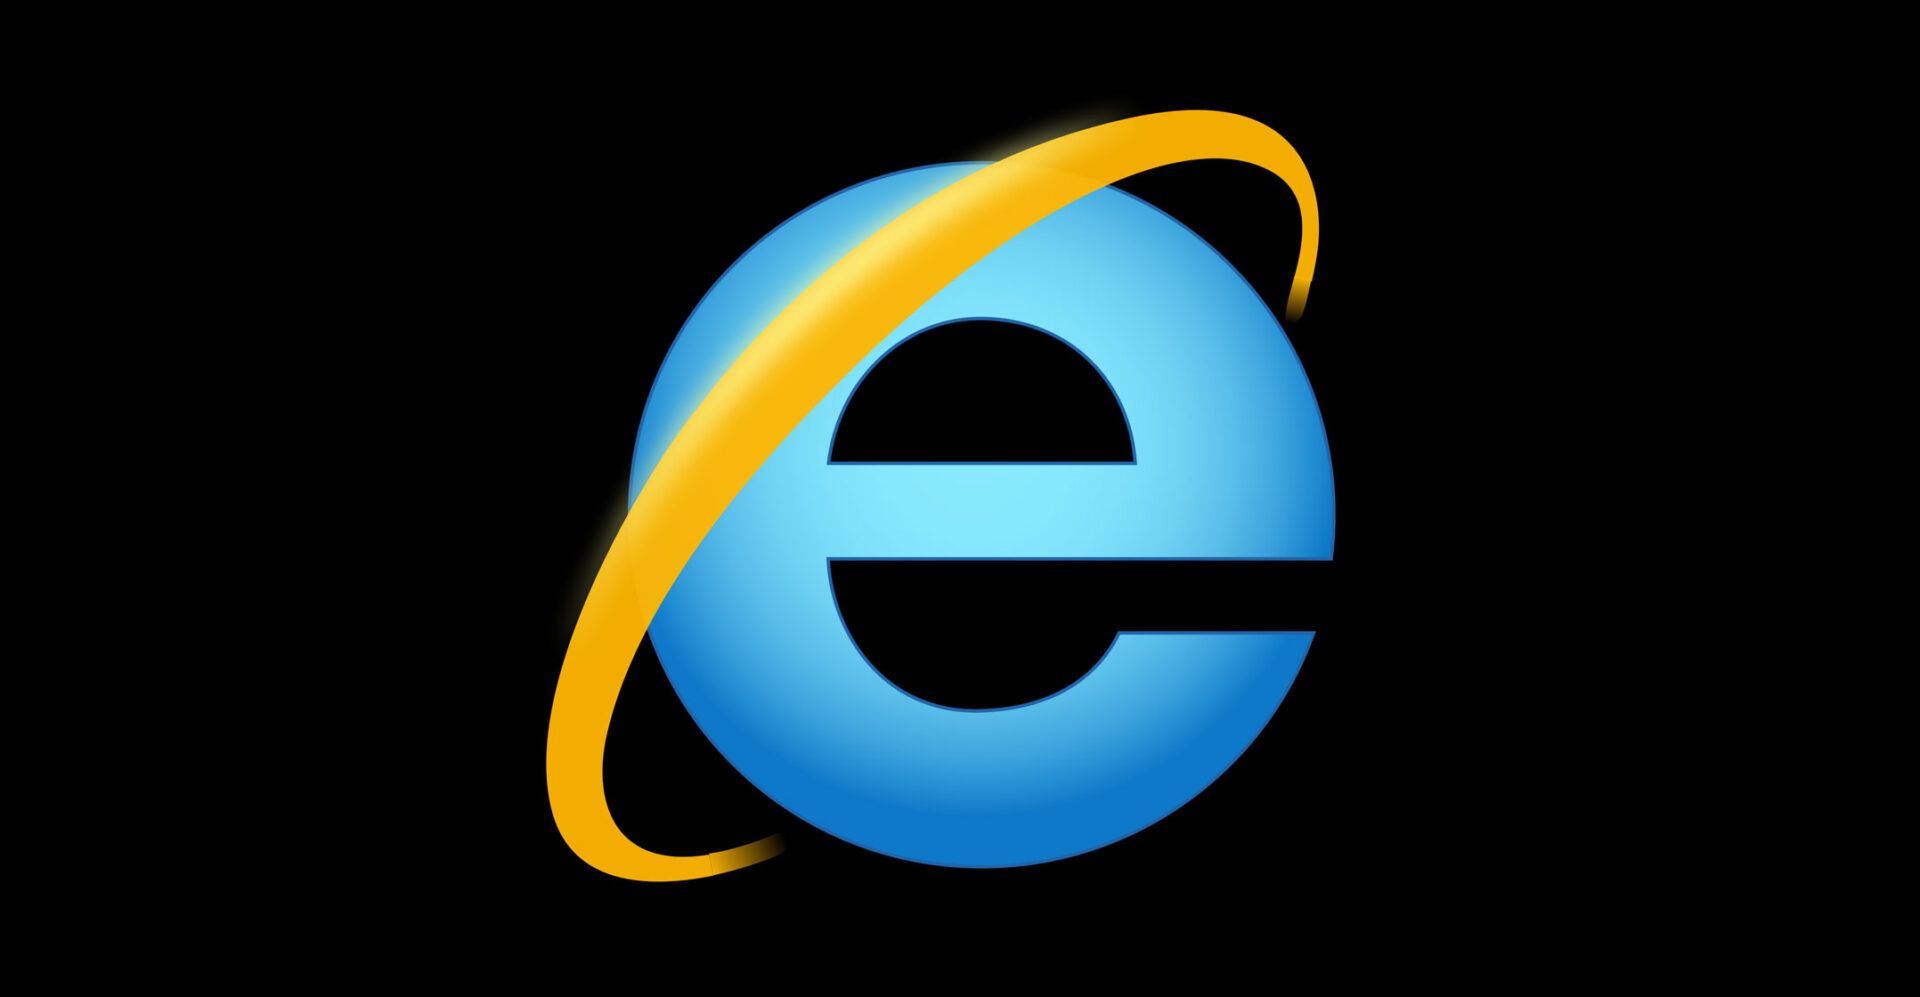 Microsoft Announces Plans to retire its Internet Explorer